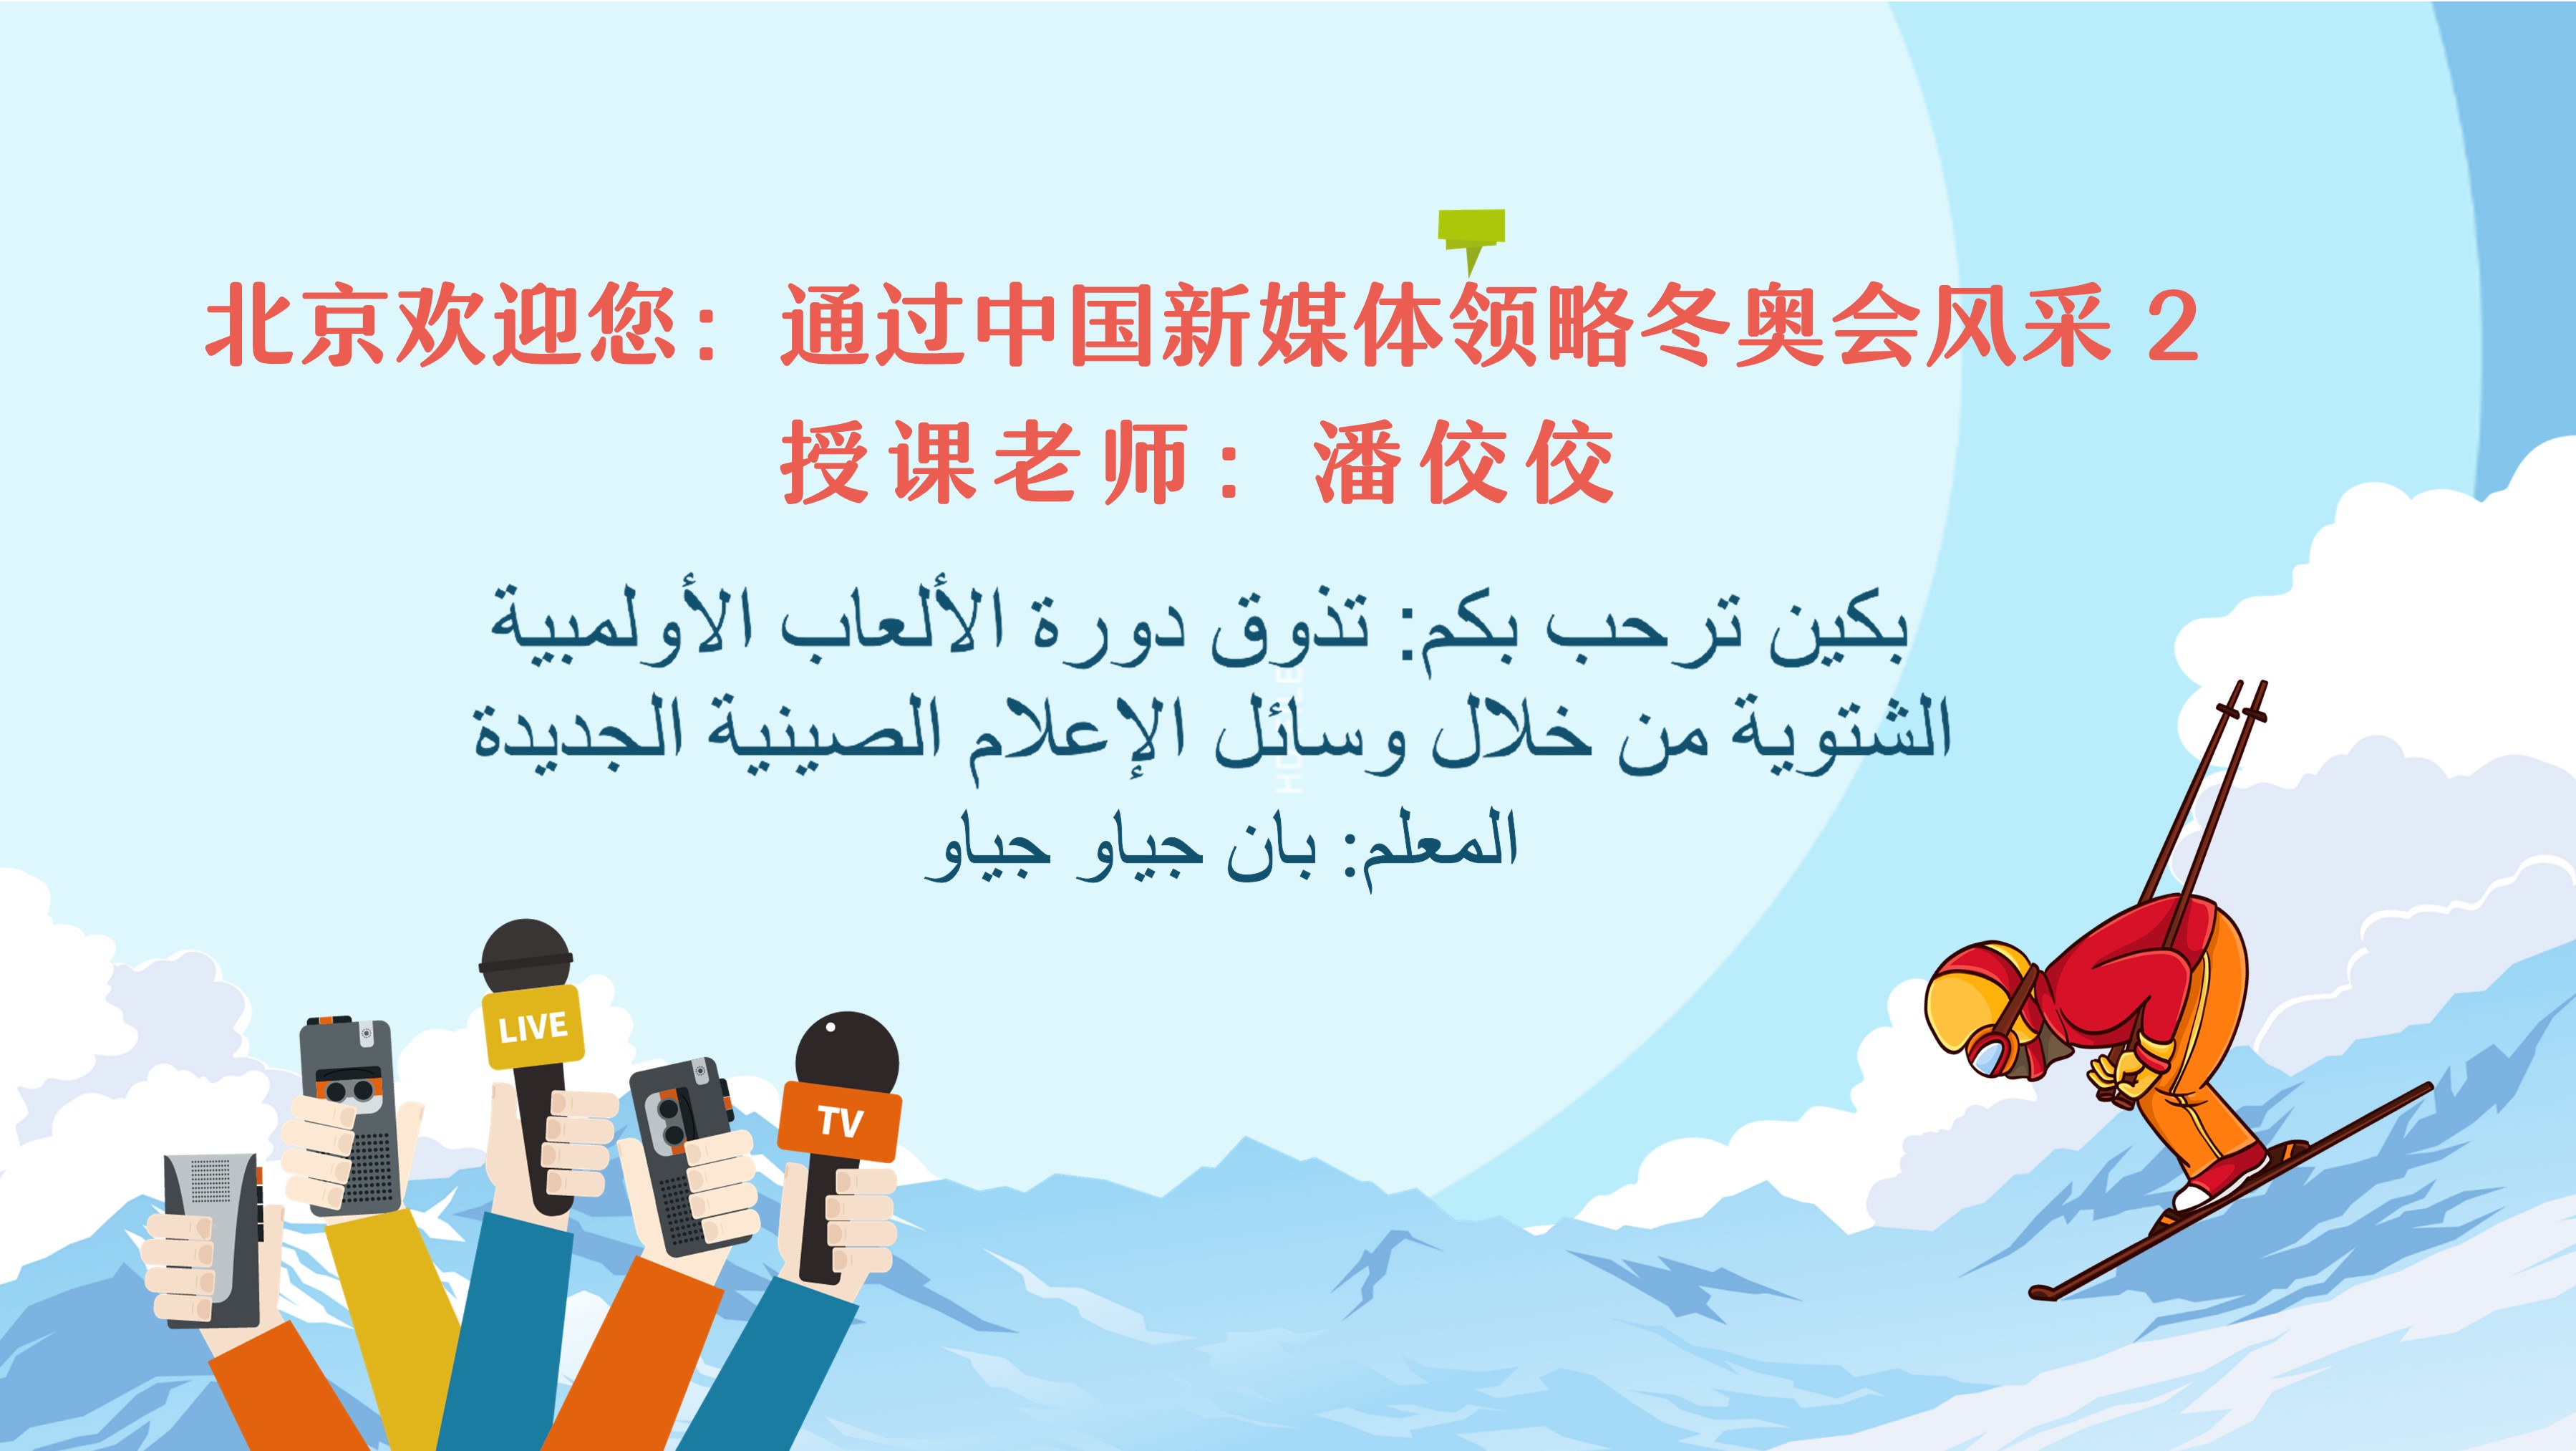 北京欢迎您：通过中国新媒体领略冬奥会风采 2